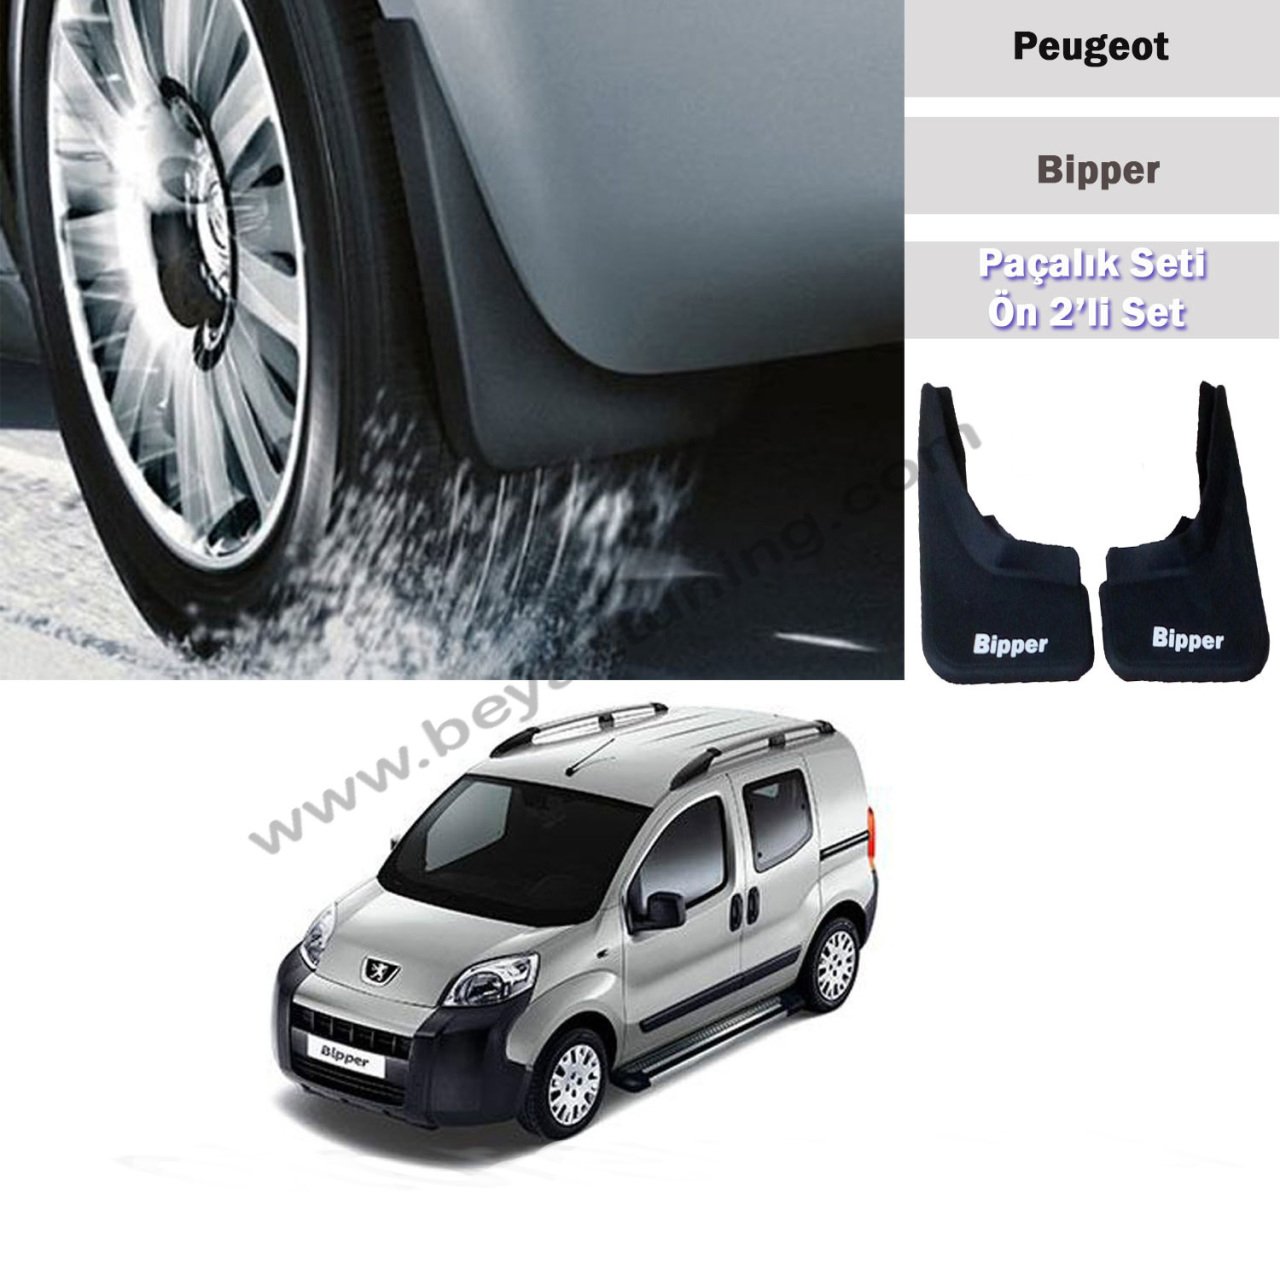 Peugeot Bipper Paçalık Tozluk Çamurluk Ön Set